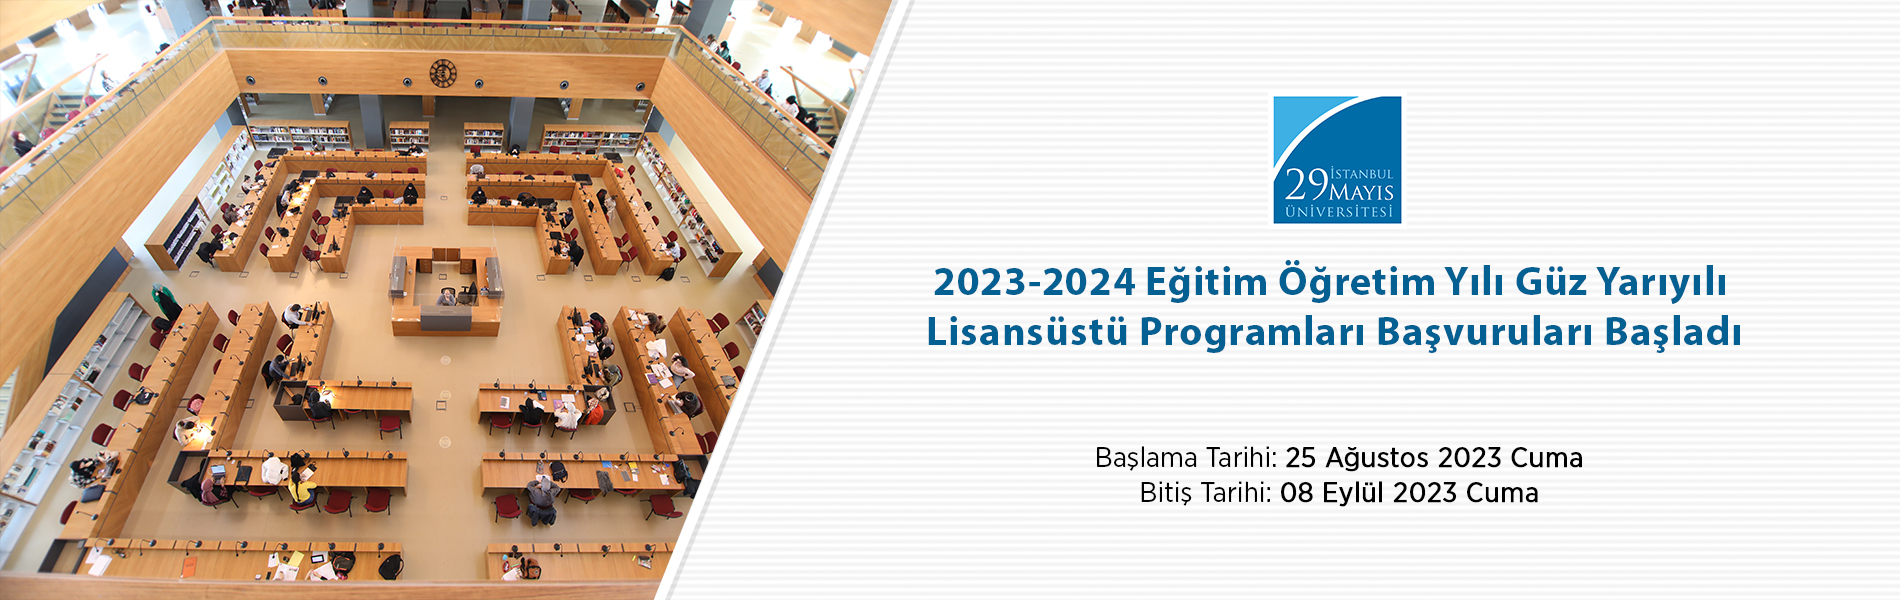 2023-2024 Eğitim Öğretim Yılı Güz Yarıyılı Lisansüstü Programları Başvuruları (İkinci İlan)